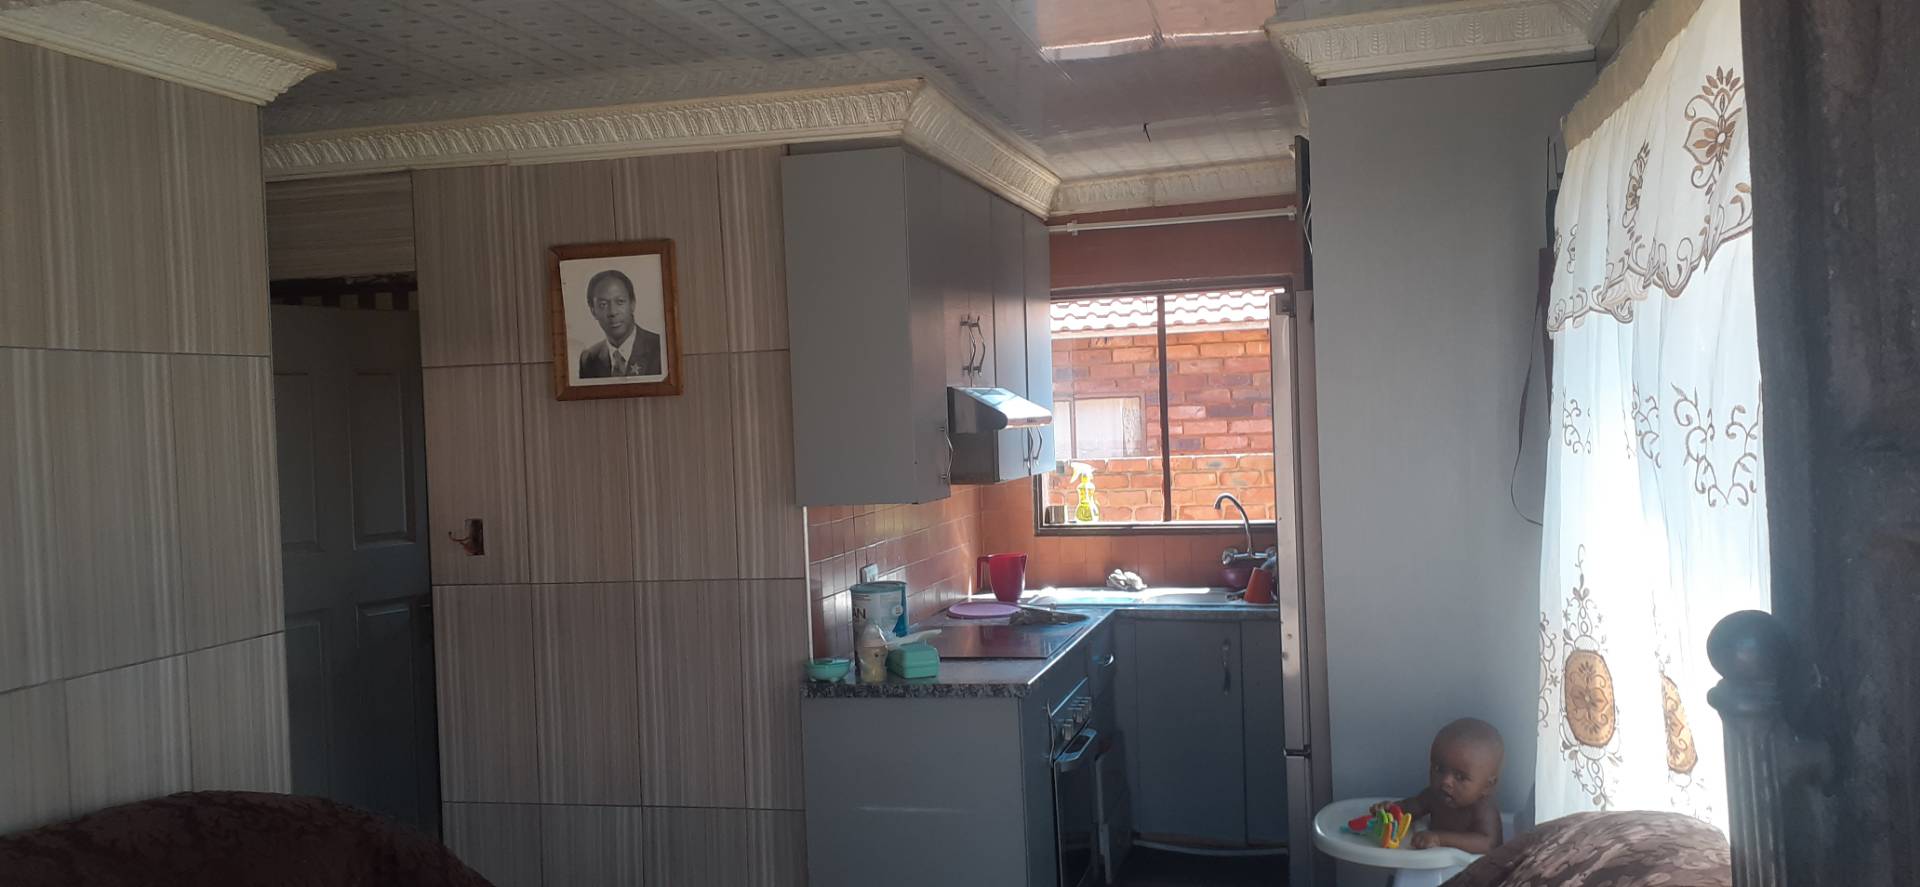 4 Bedroom Property for Sale in Soshanguve South Ext 1 Gauteng